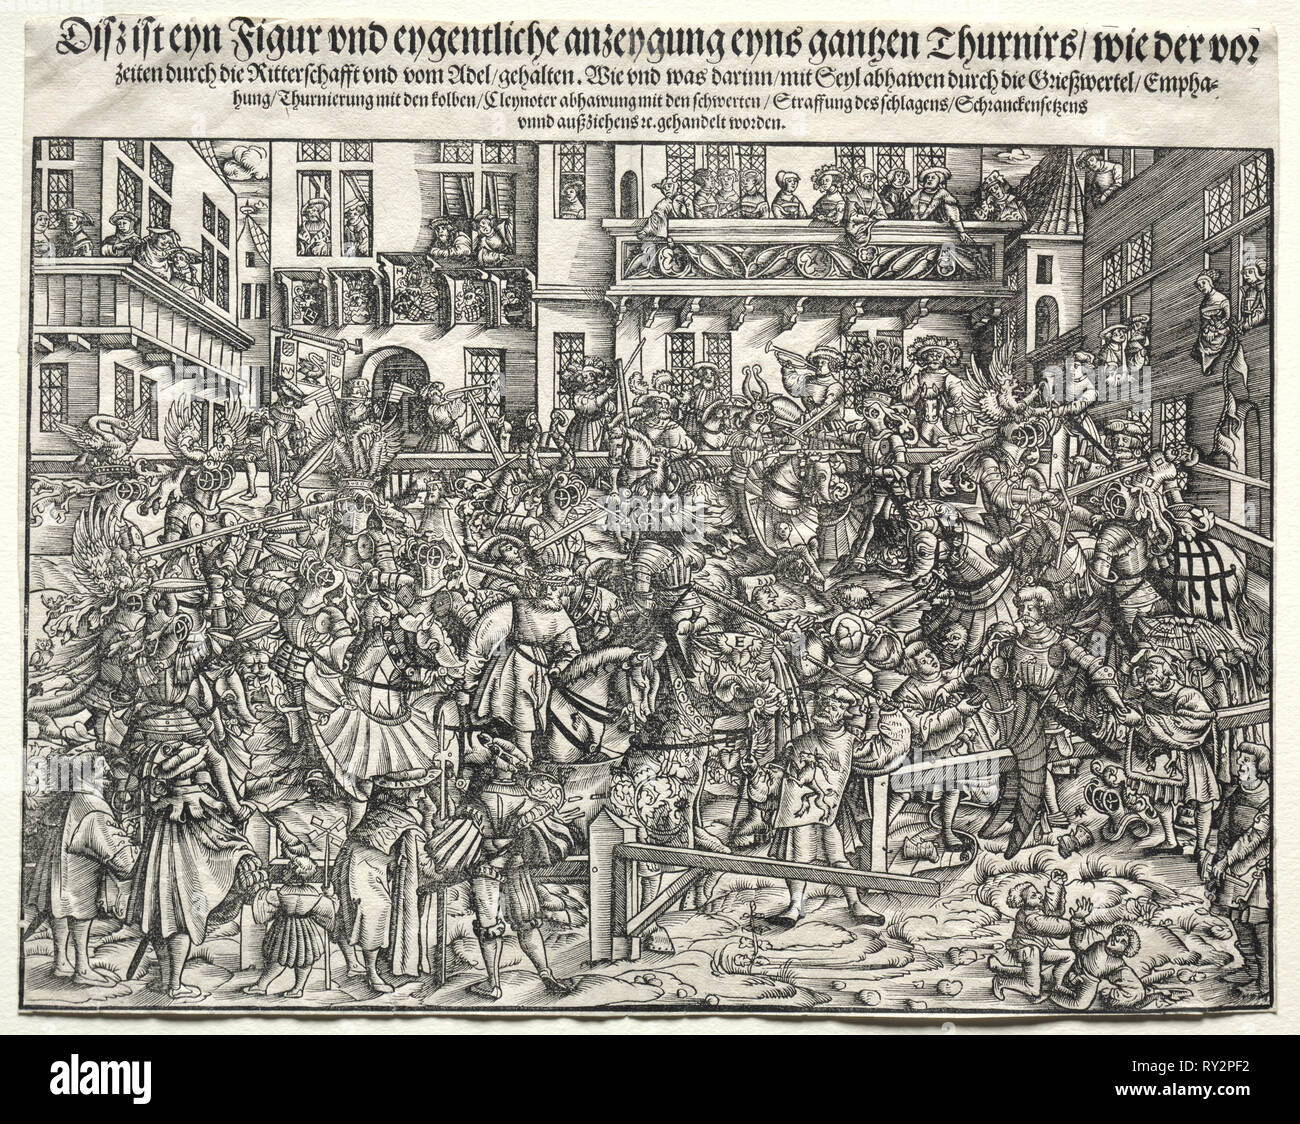 Un tournoi, années 1500. Allemagne, 16ème siècle. Gravure sur bois Banque D'Images